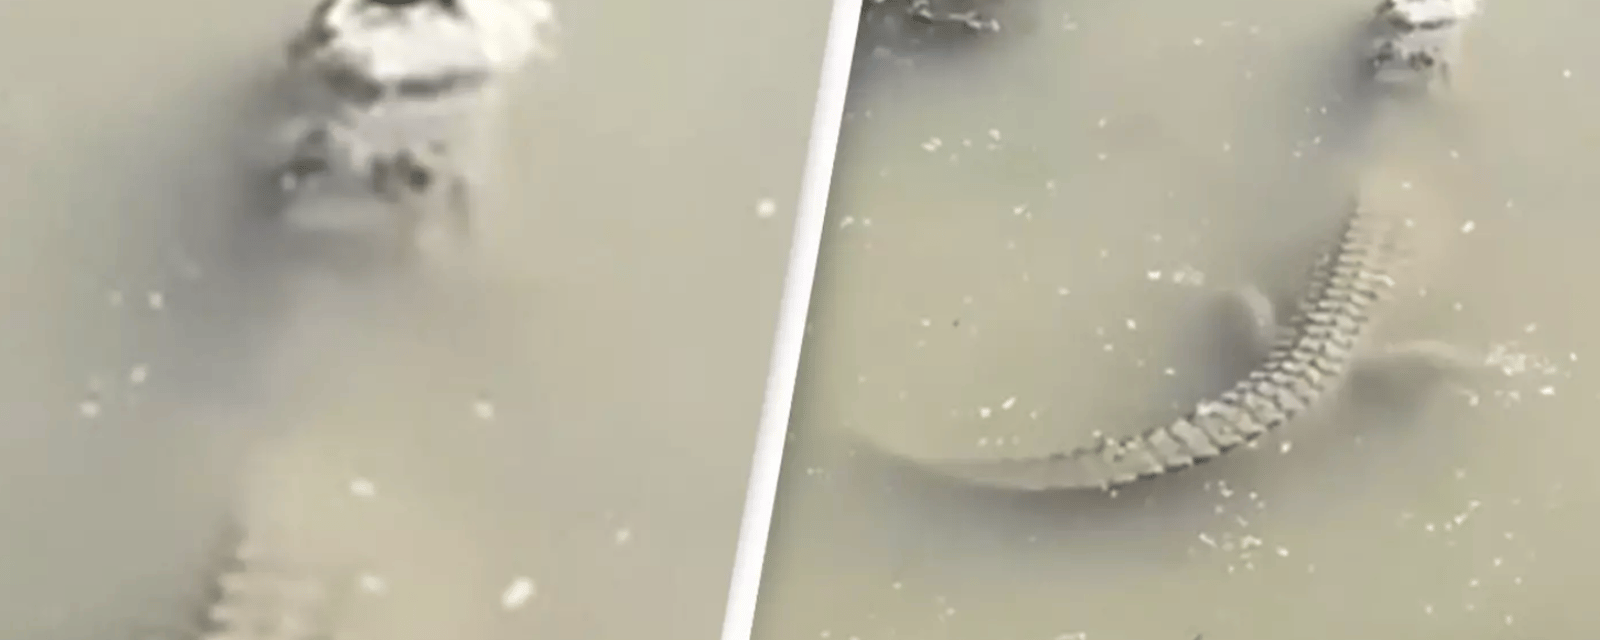 Une vidéo montre comment un alligator arrive à survivre dans la glace.